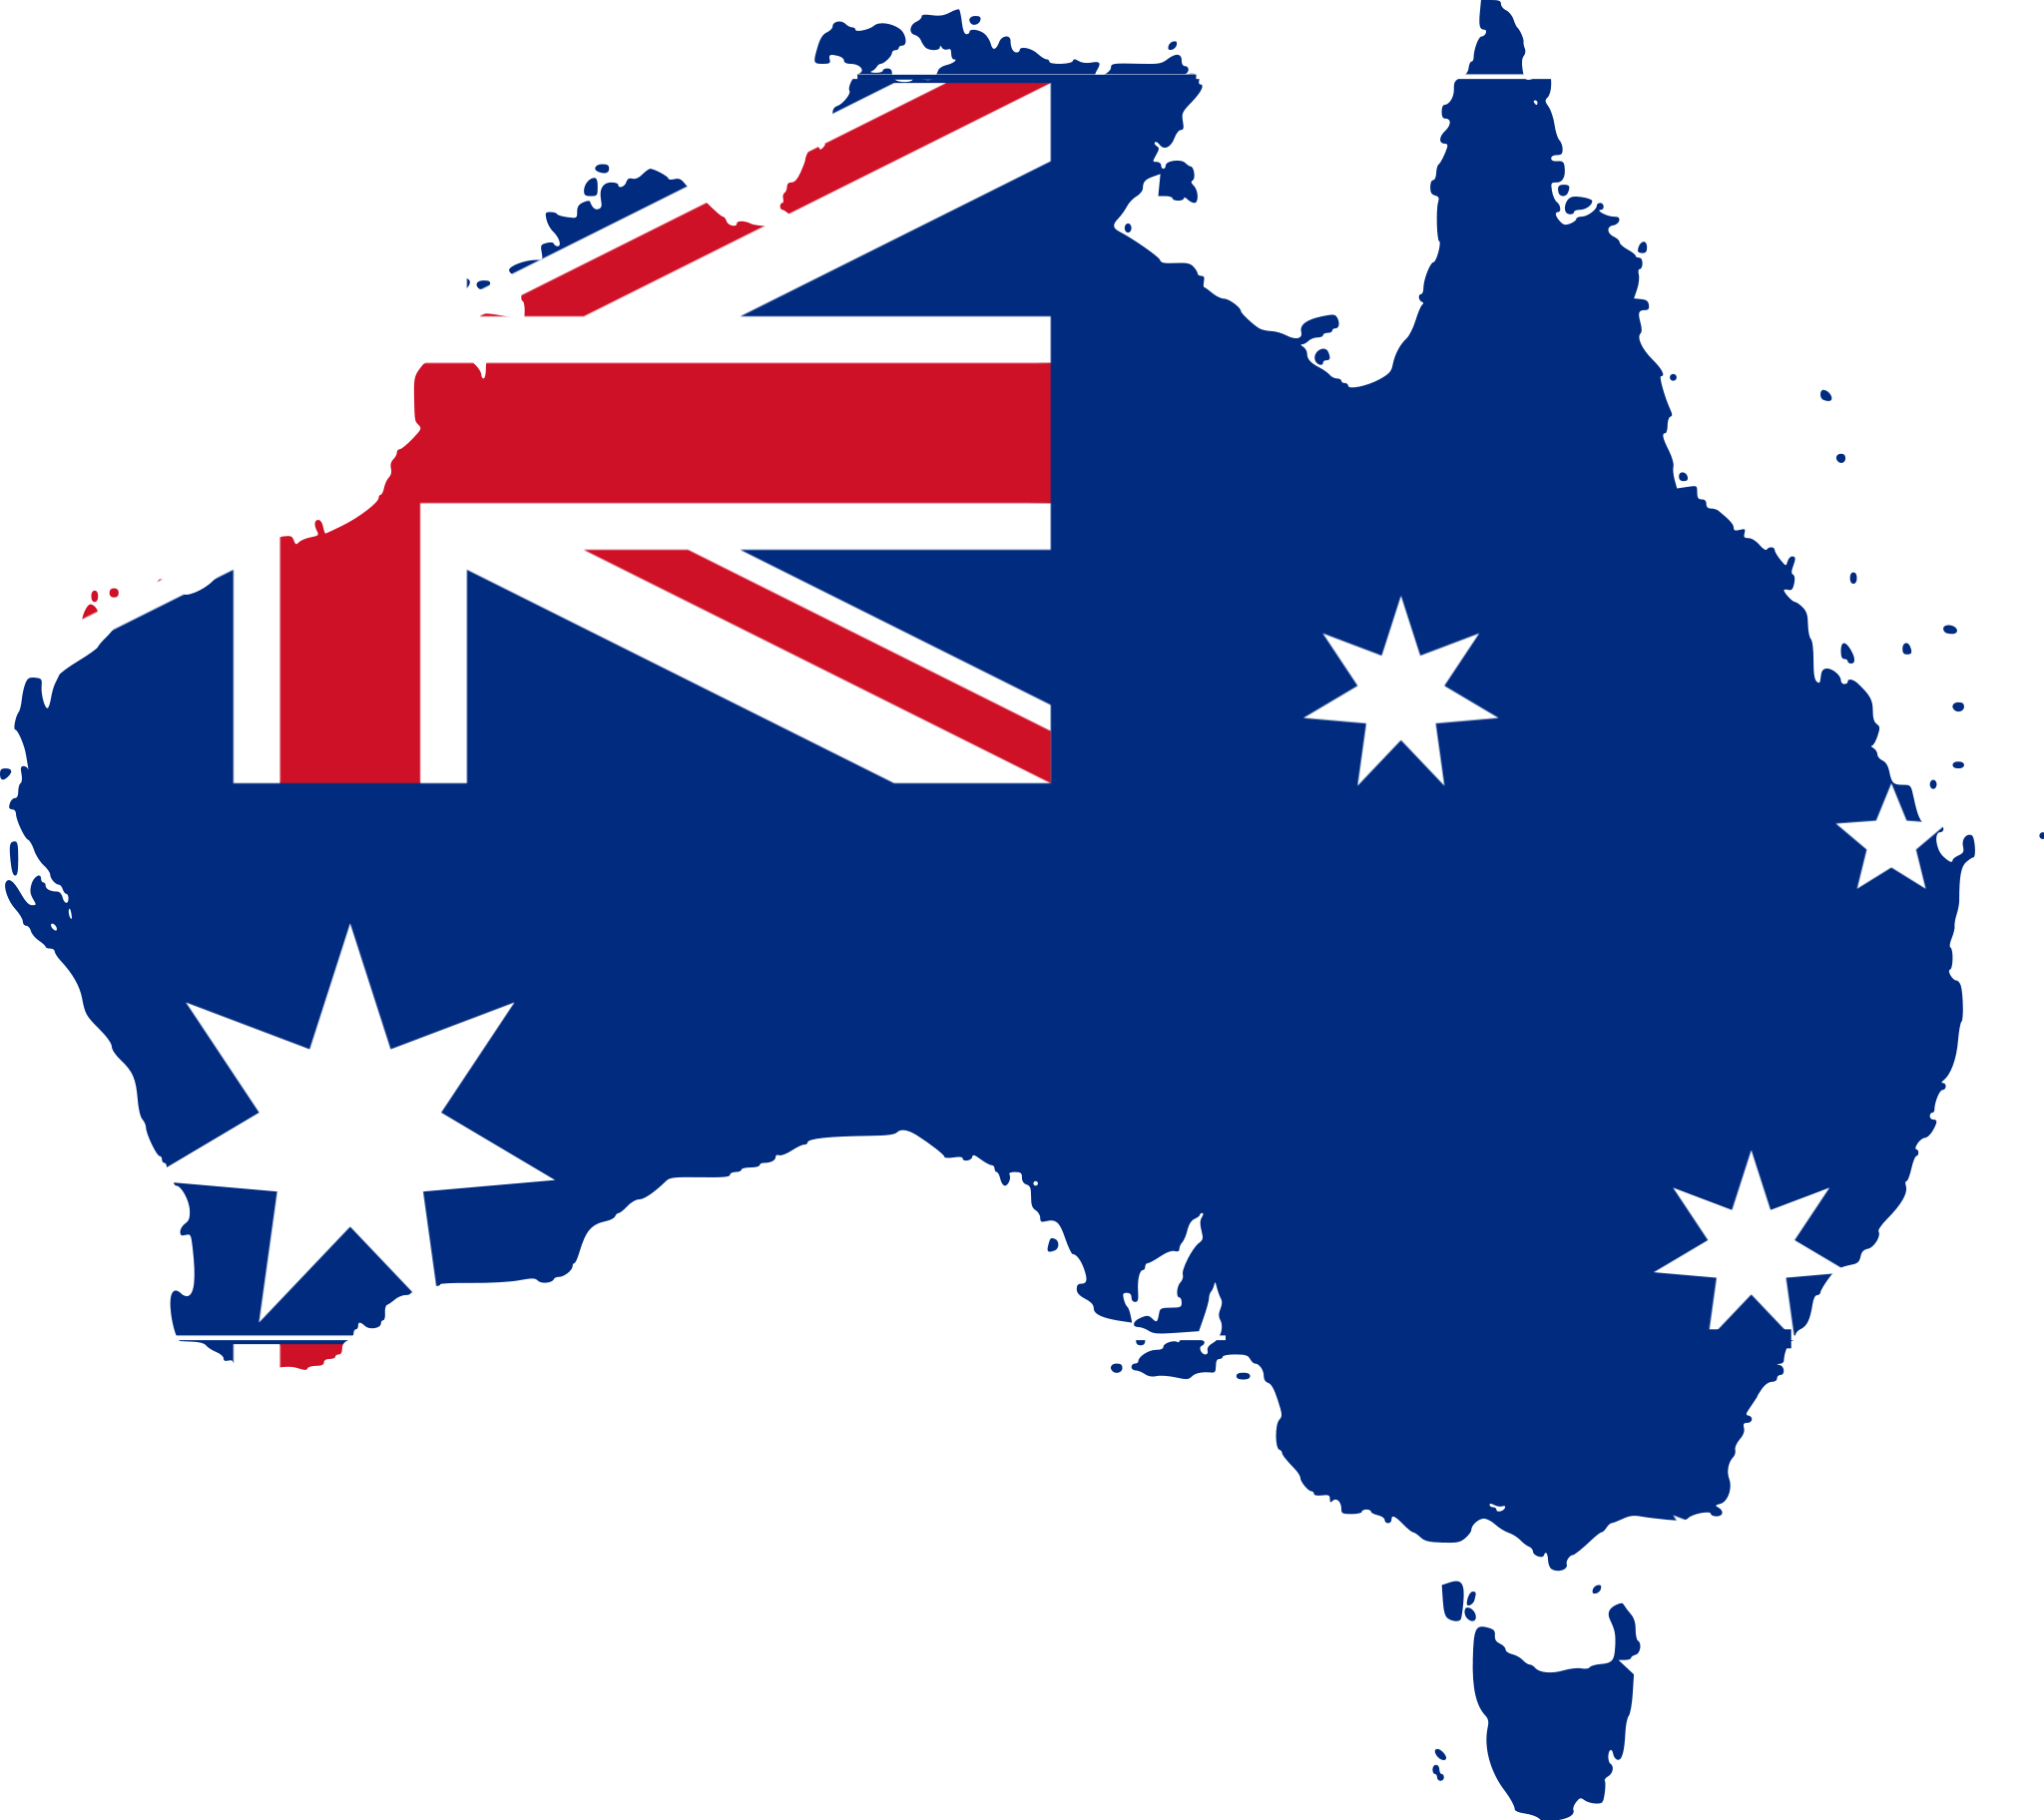 امتیاز انحصاری آیلتس به مدت 10 سال در استرالیا بسته شد